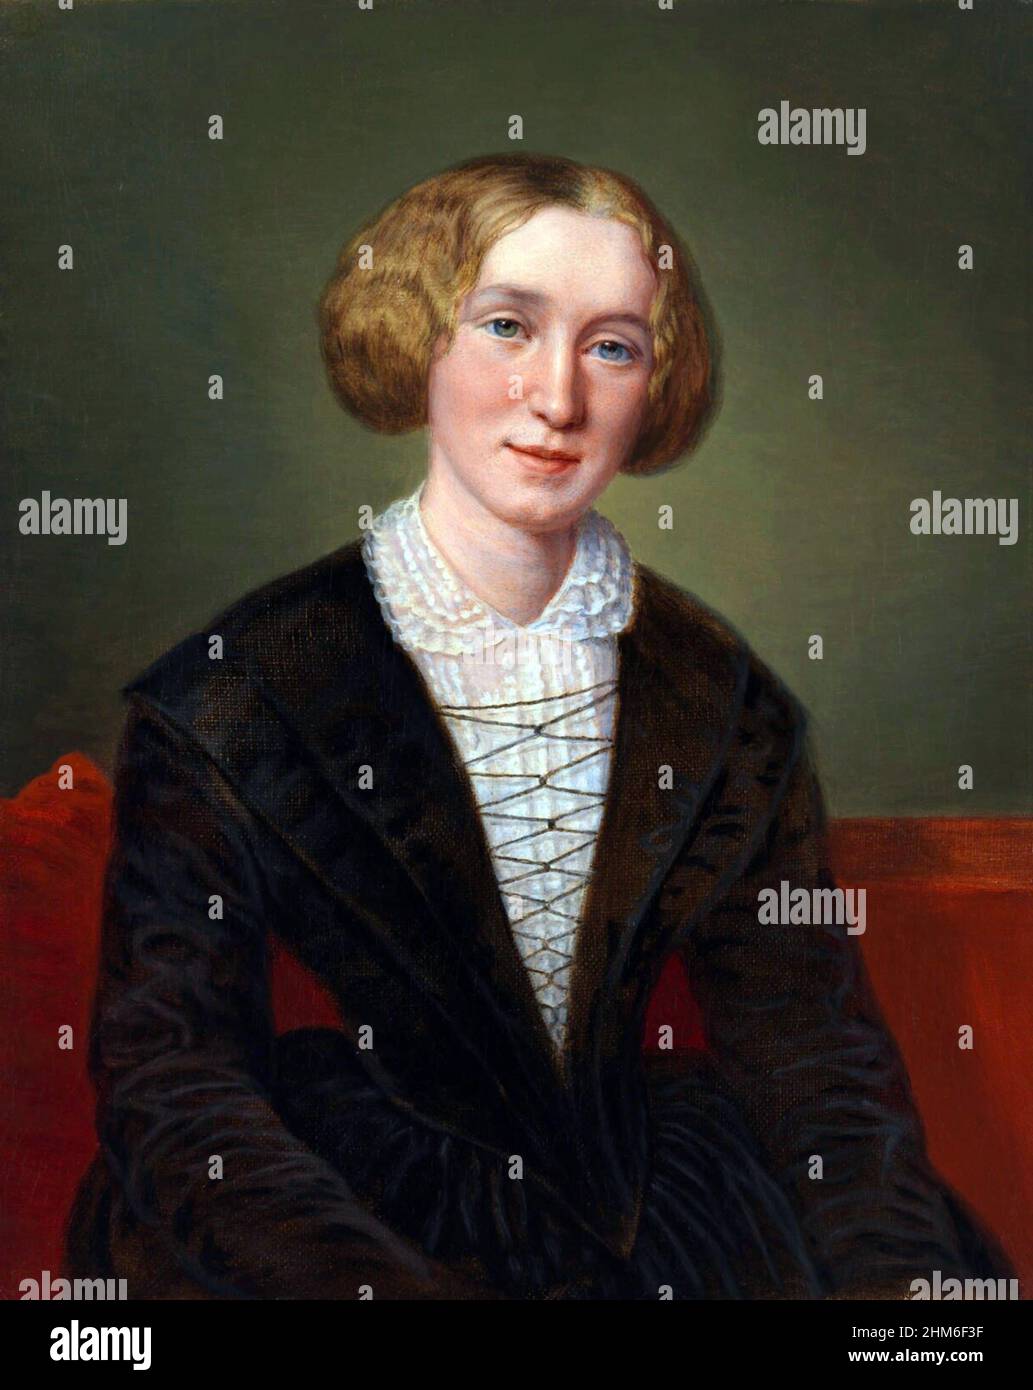 Un ritratto dello scrittore inglese George Eliot, che era il nom de plume di Mary Ann Evans, dal 1850 quando aveva 31 anni. Ritratto di Francois D'Albert Durade. Foto Stock